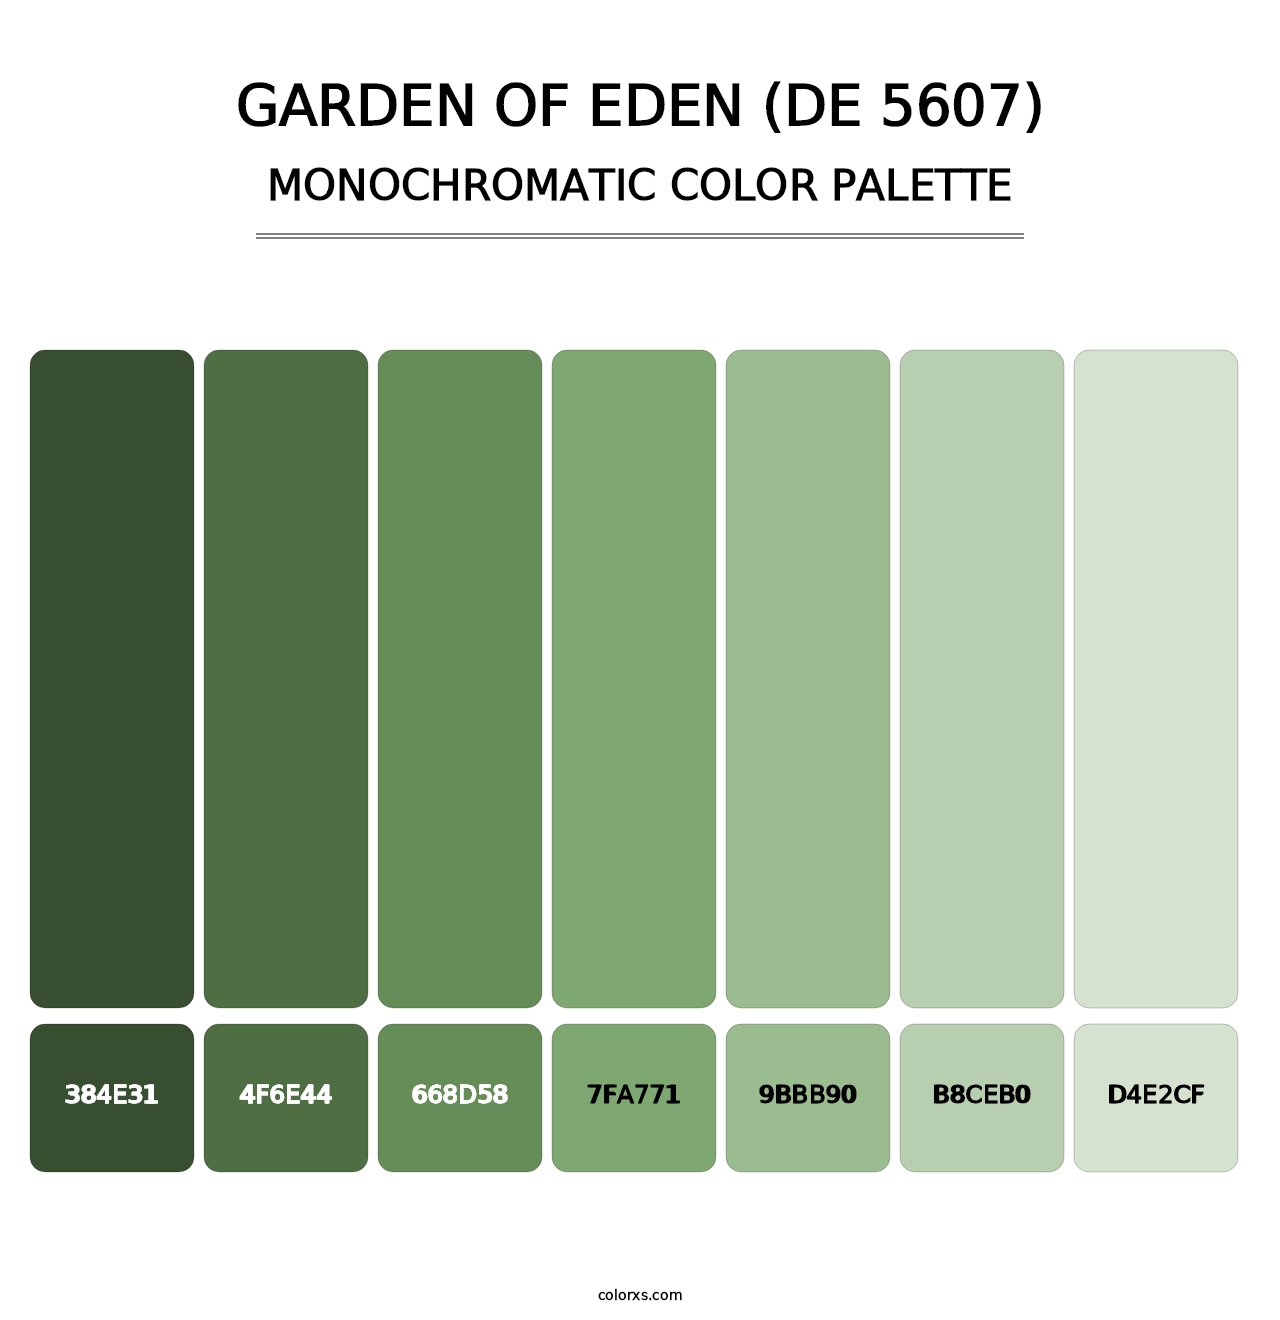 Garden of Eden (DE 5607) - Monochromatic Color Palette